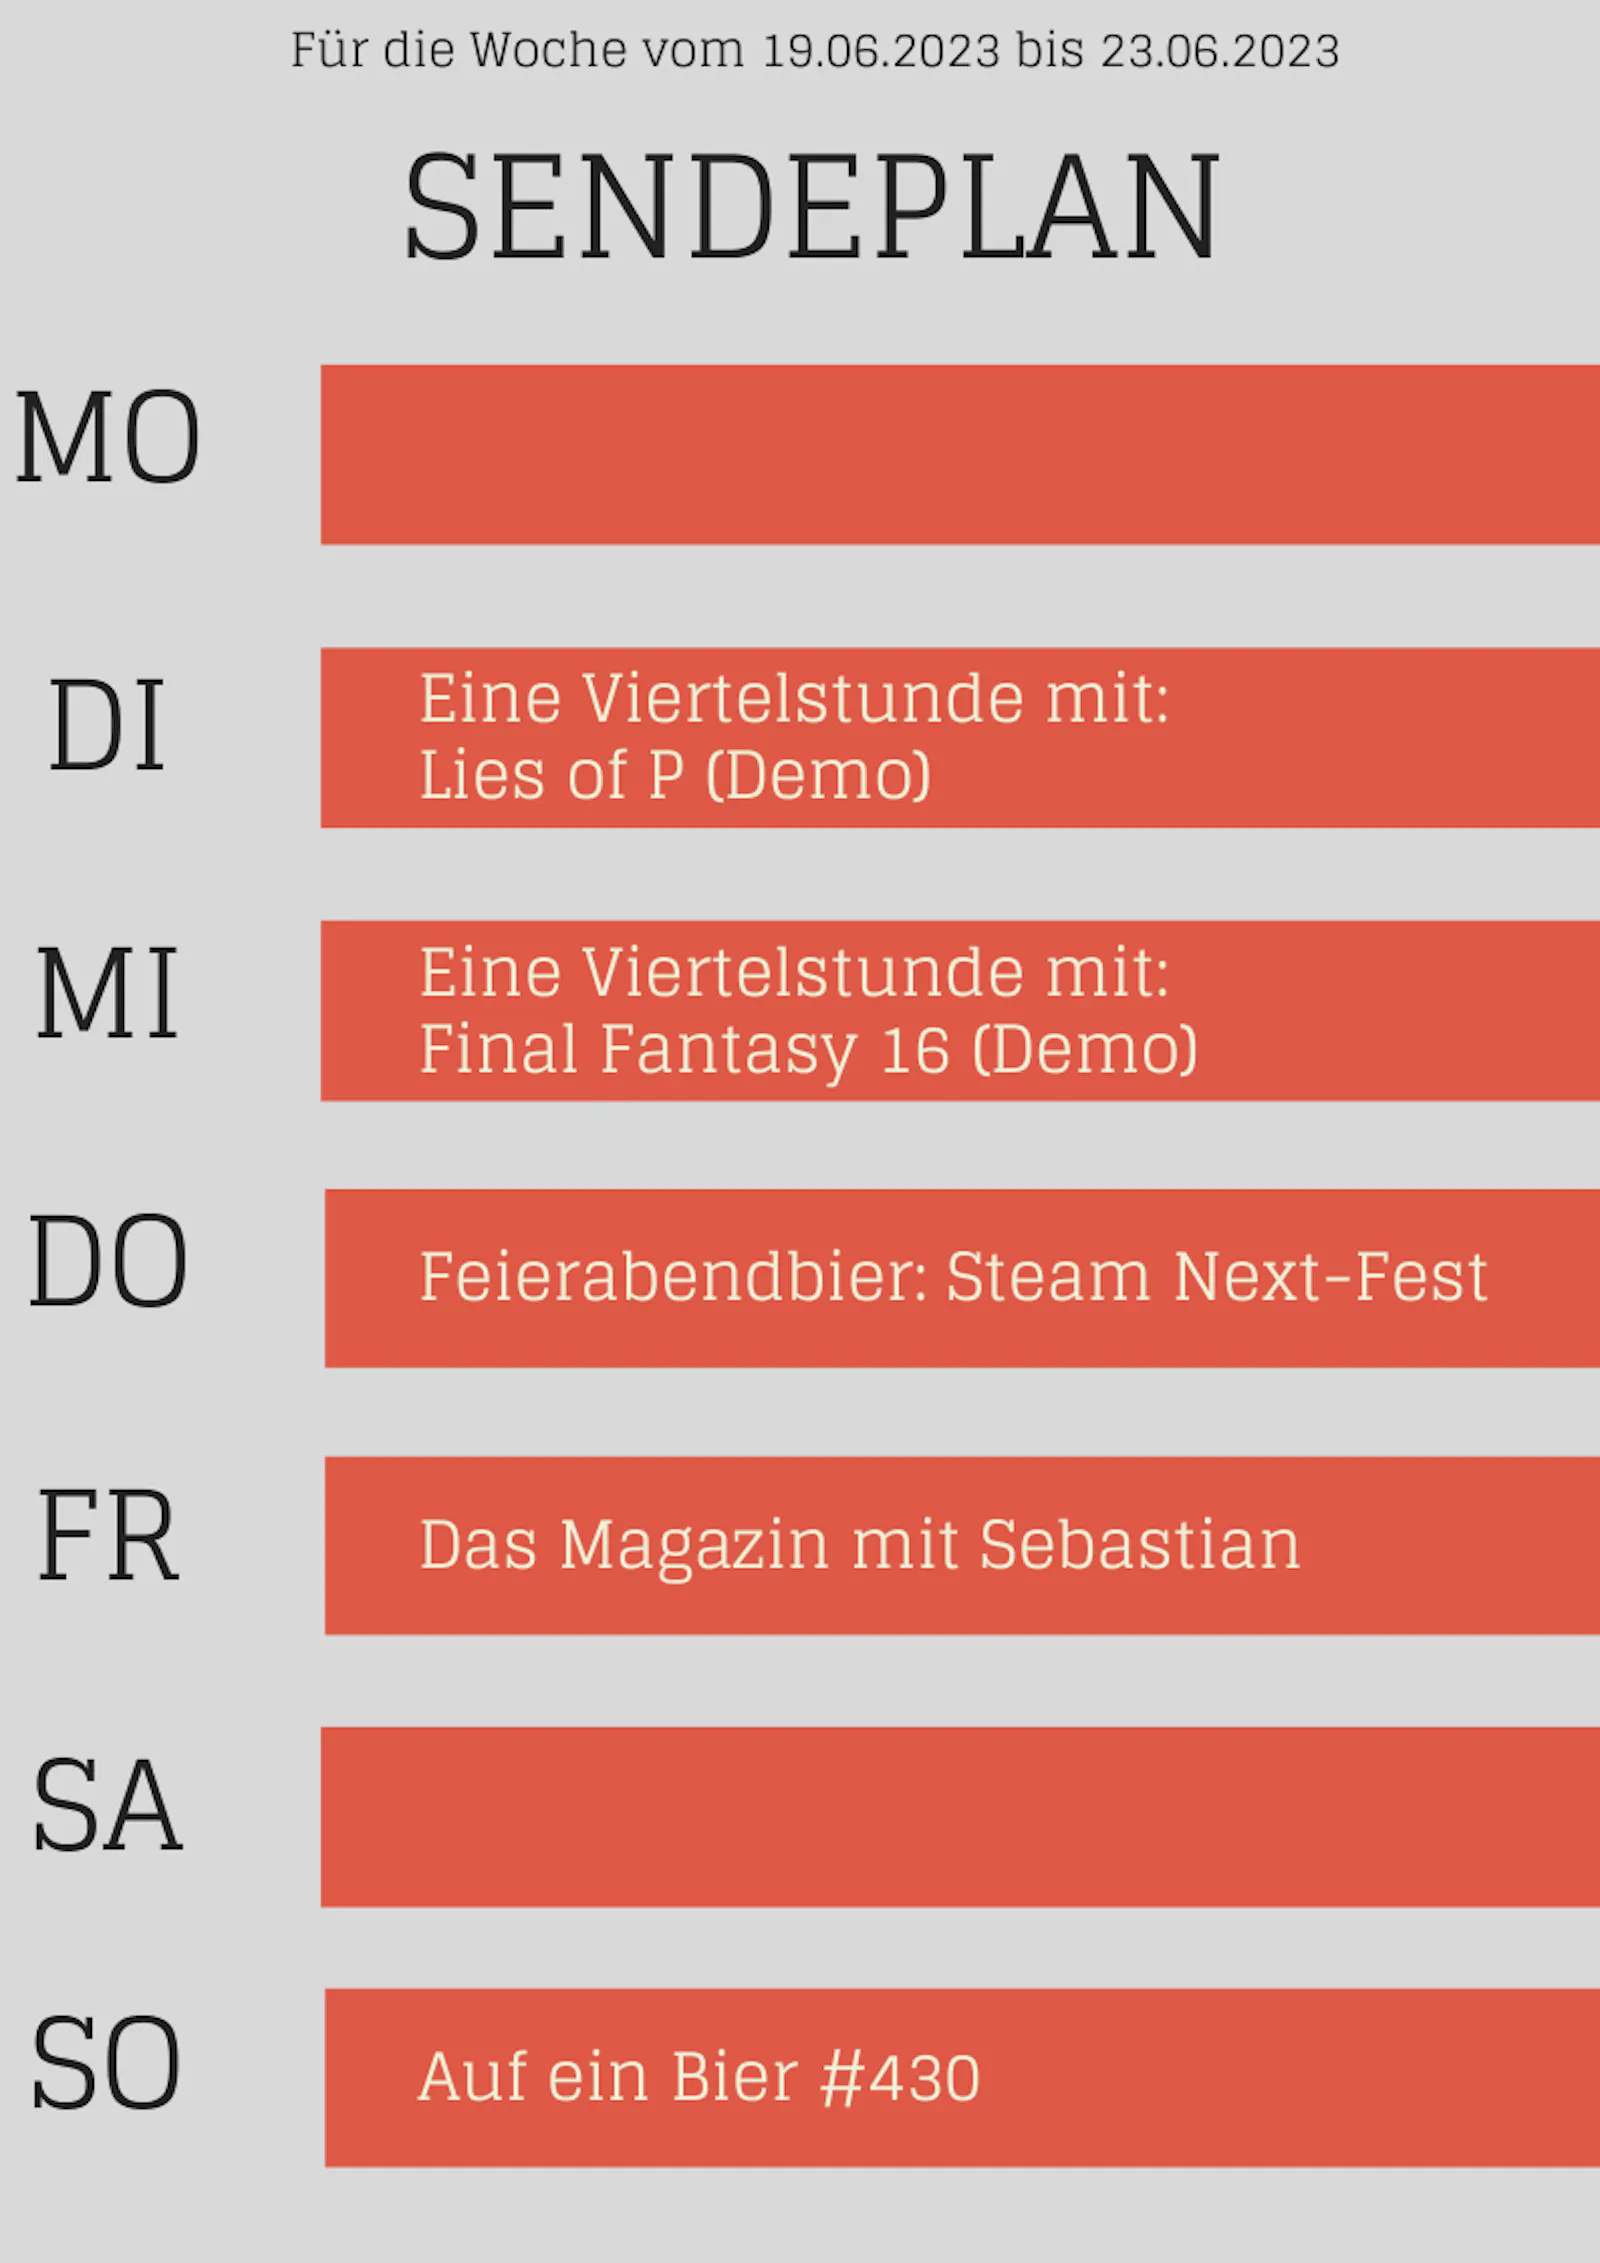 19.6. - 25.6.2023

Di: Viertelstunde zu "Lies of P" (Demo)
Mi: VIertelstunde zu "Final Fantasy 16" (Demo)
Do: Feierabendbier zu Steams Next Fest
Fr: Das Magazin mit Sebastian
So: Auf ein Bier #430